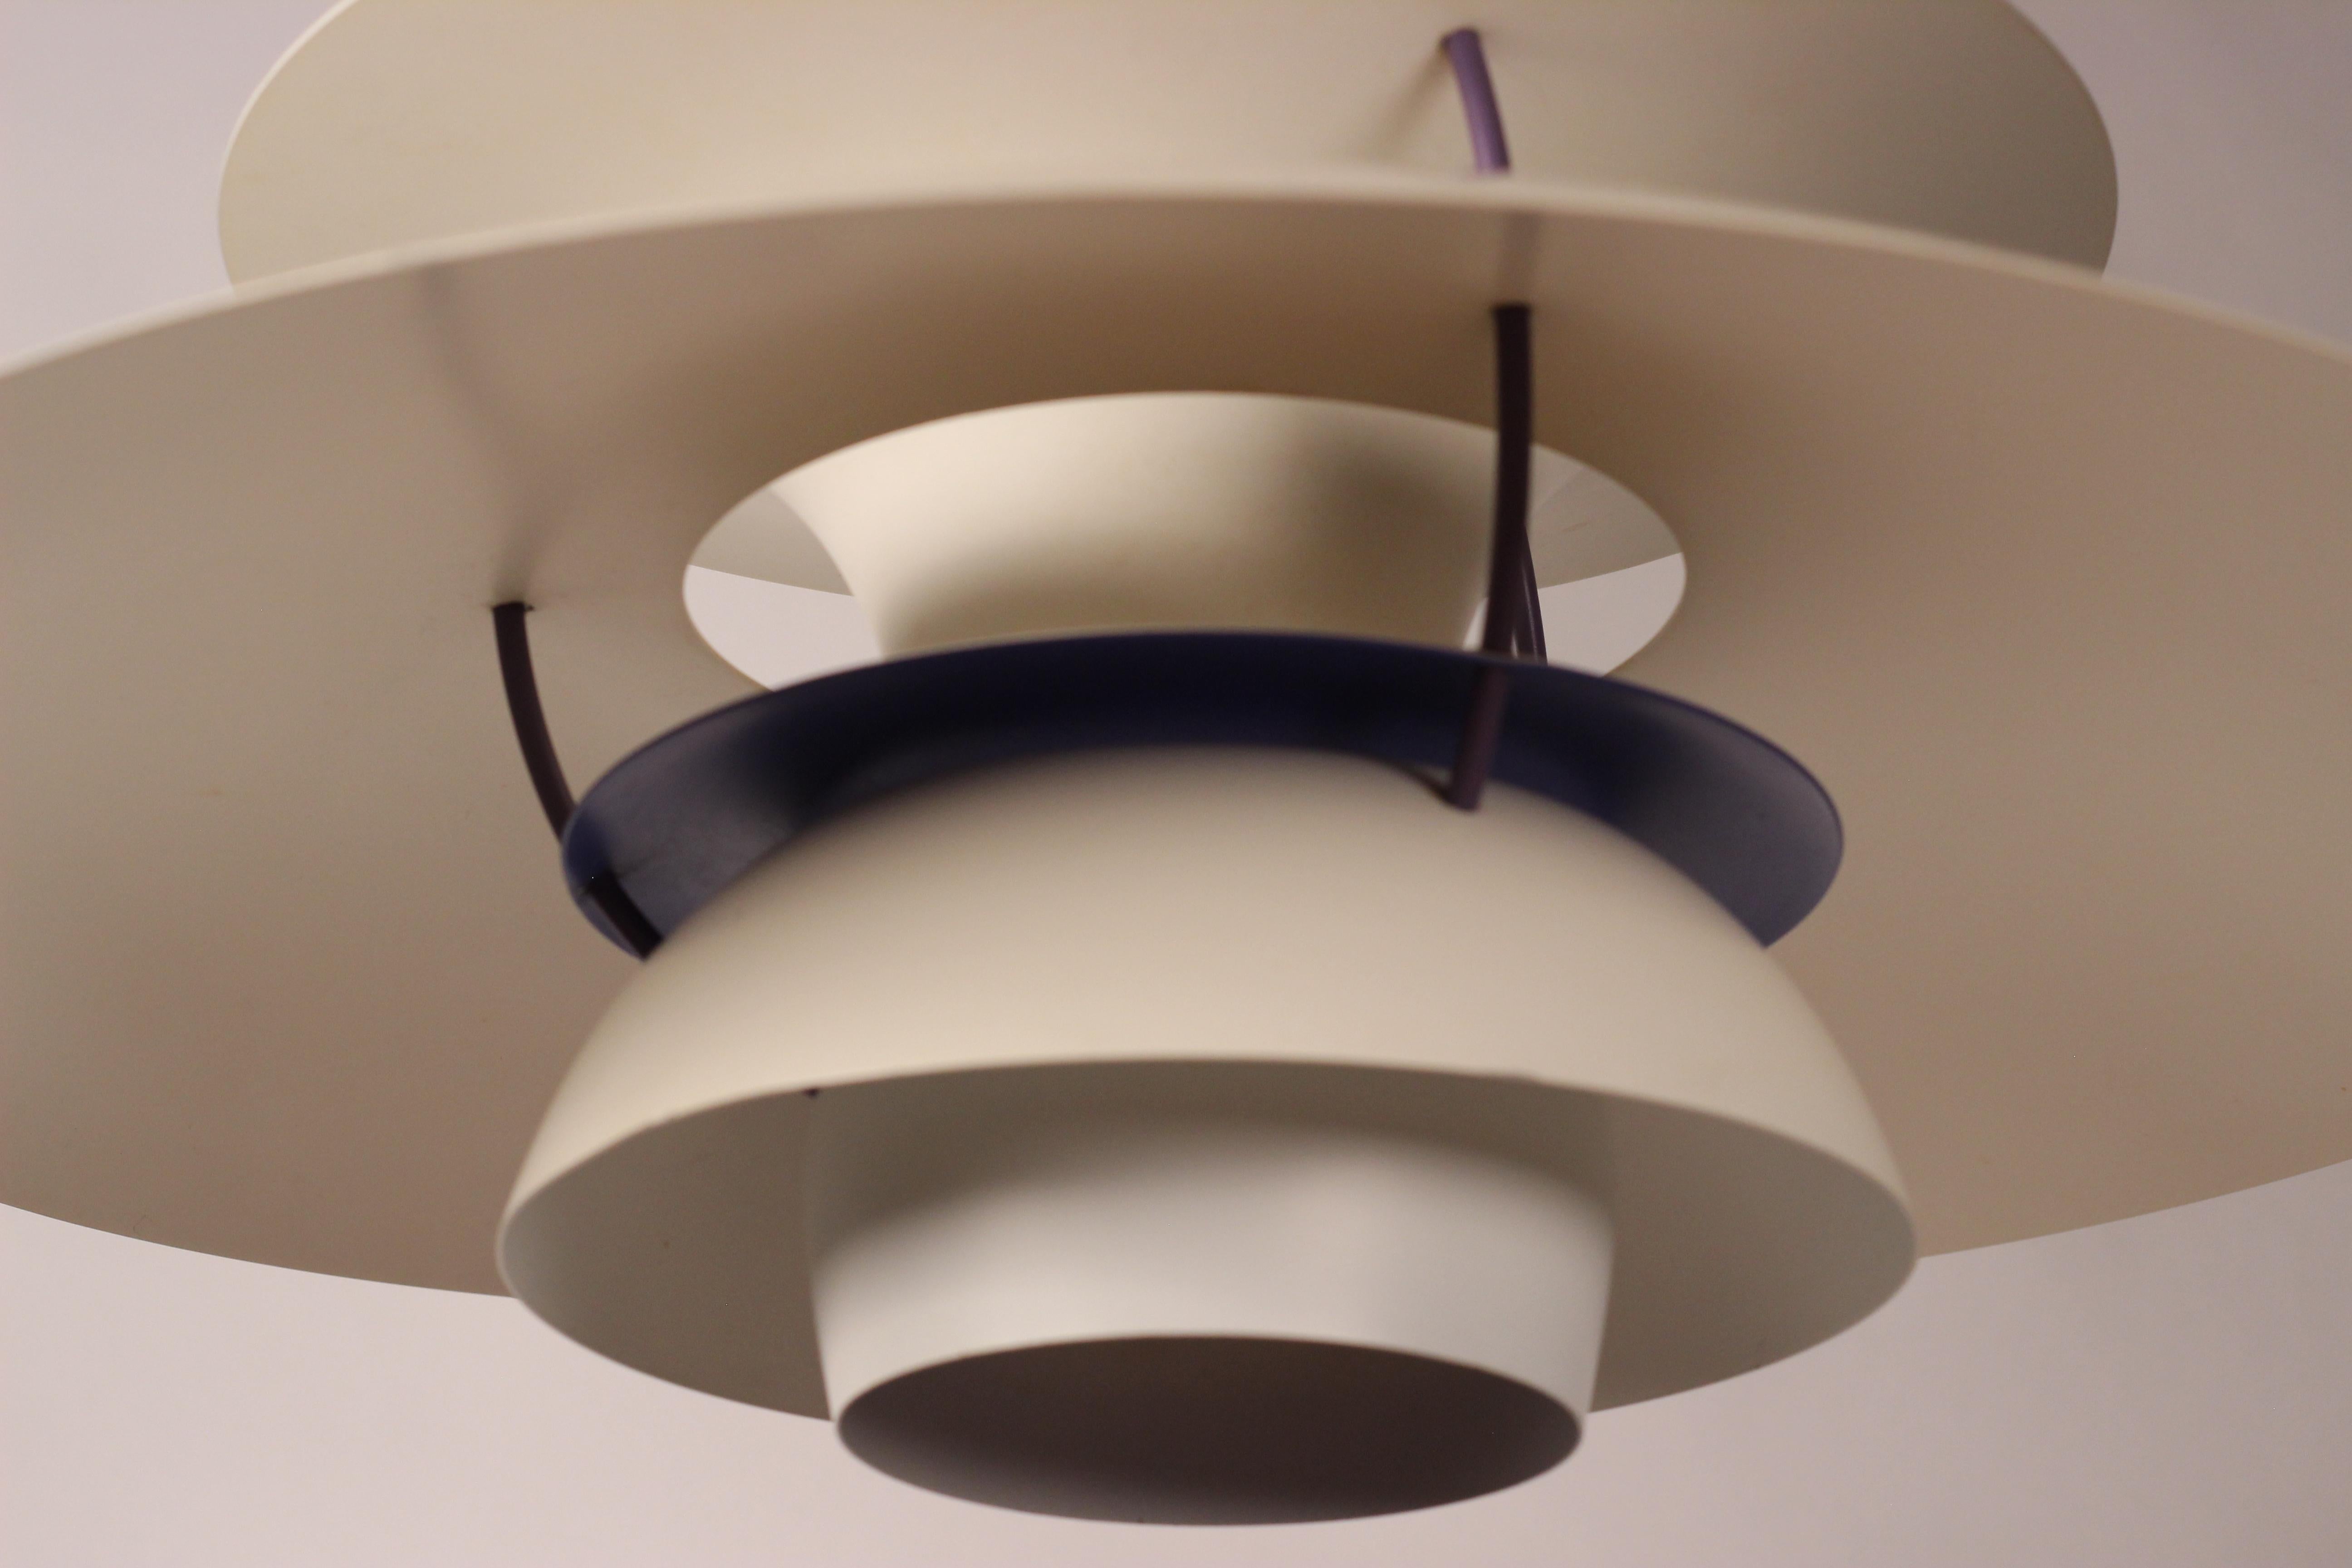 Mid-20th Century Scandinavian Modern PH5 Pendant Ceiling Light Designed by Poul Henningsen 1960’s